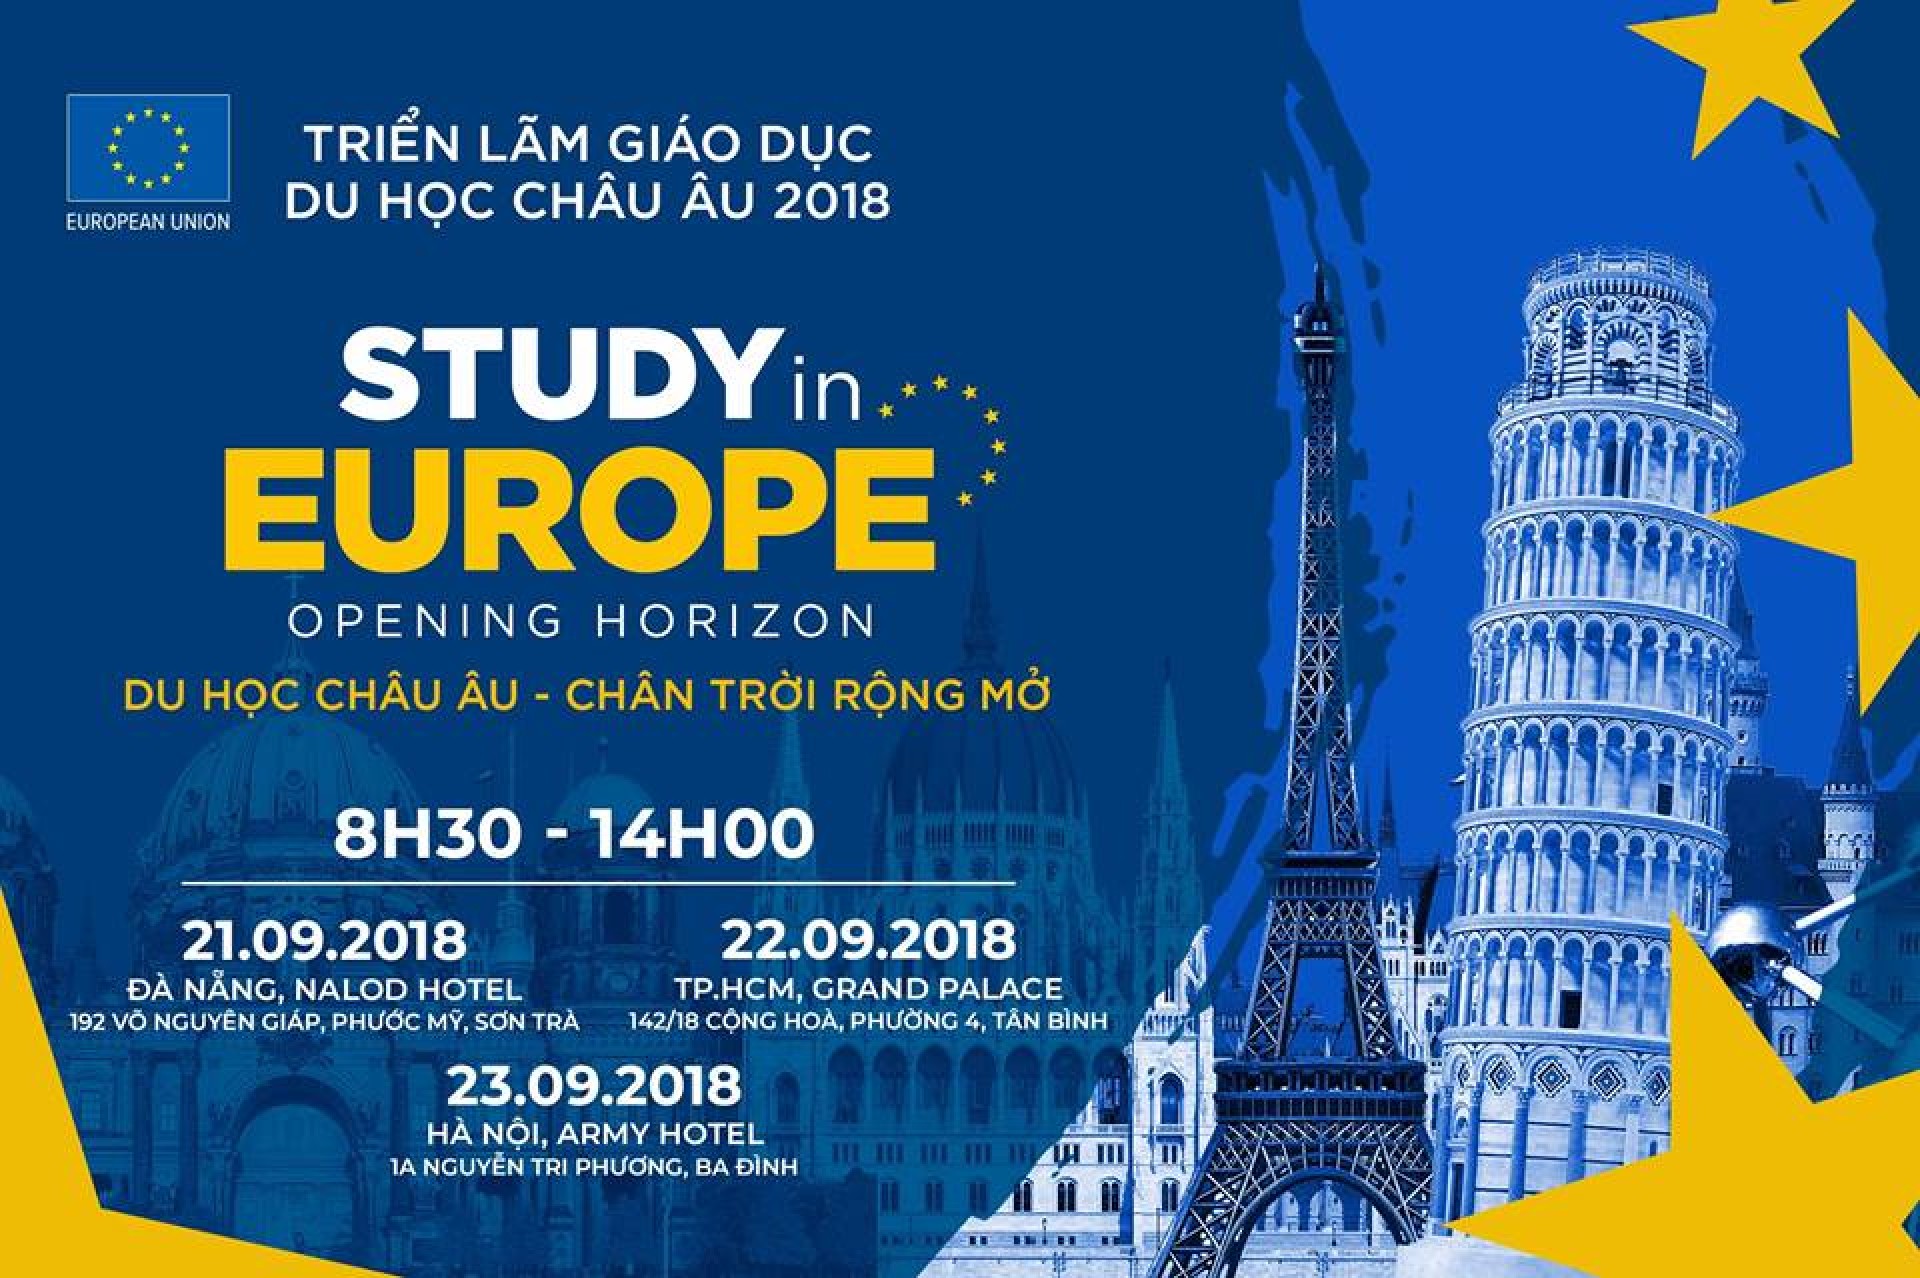 STUDY IN EUROPE 2018: CHUỖI SỰ KIỆN DU HỌC CHÂU ÂU LỚN NHẤT 2018